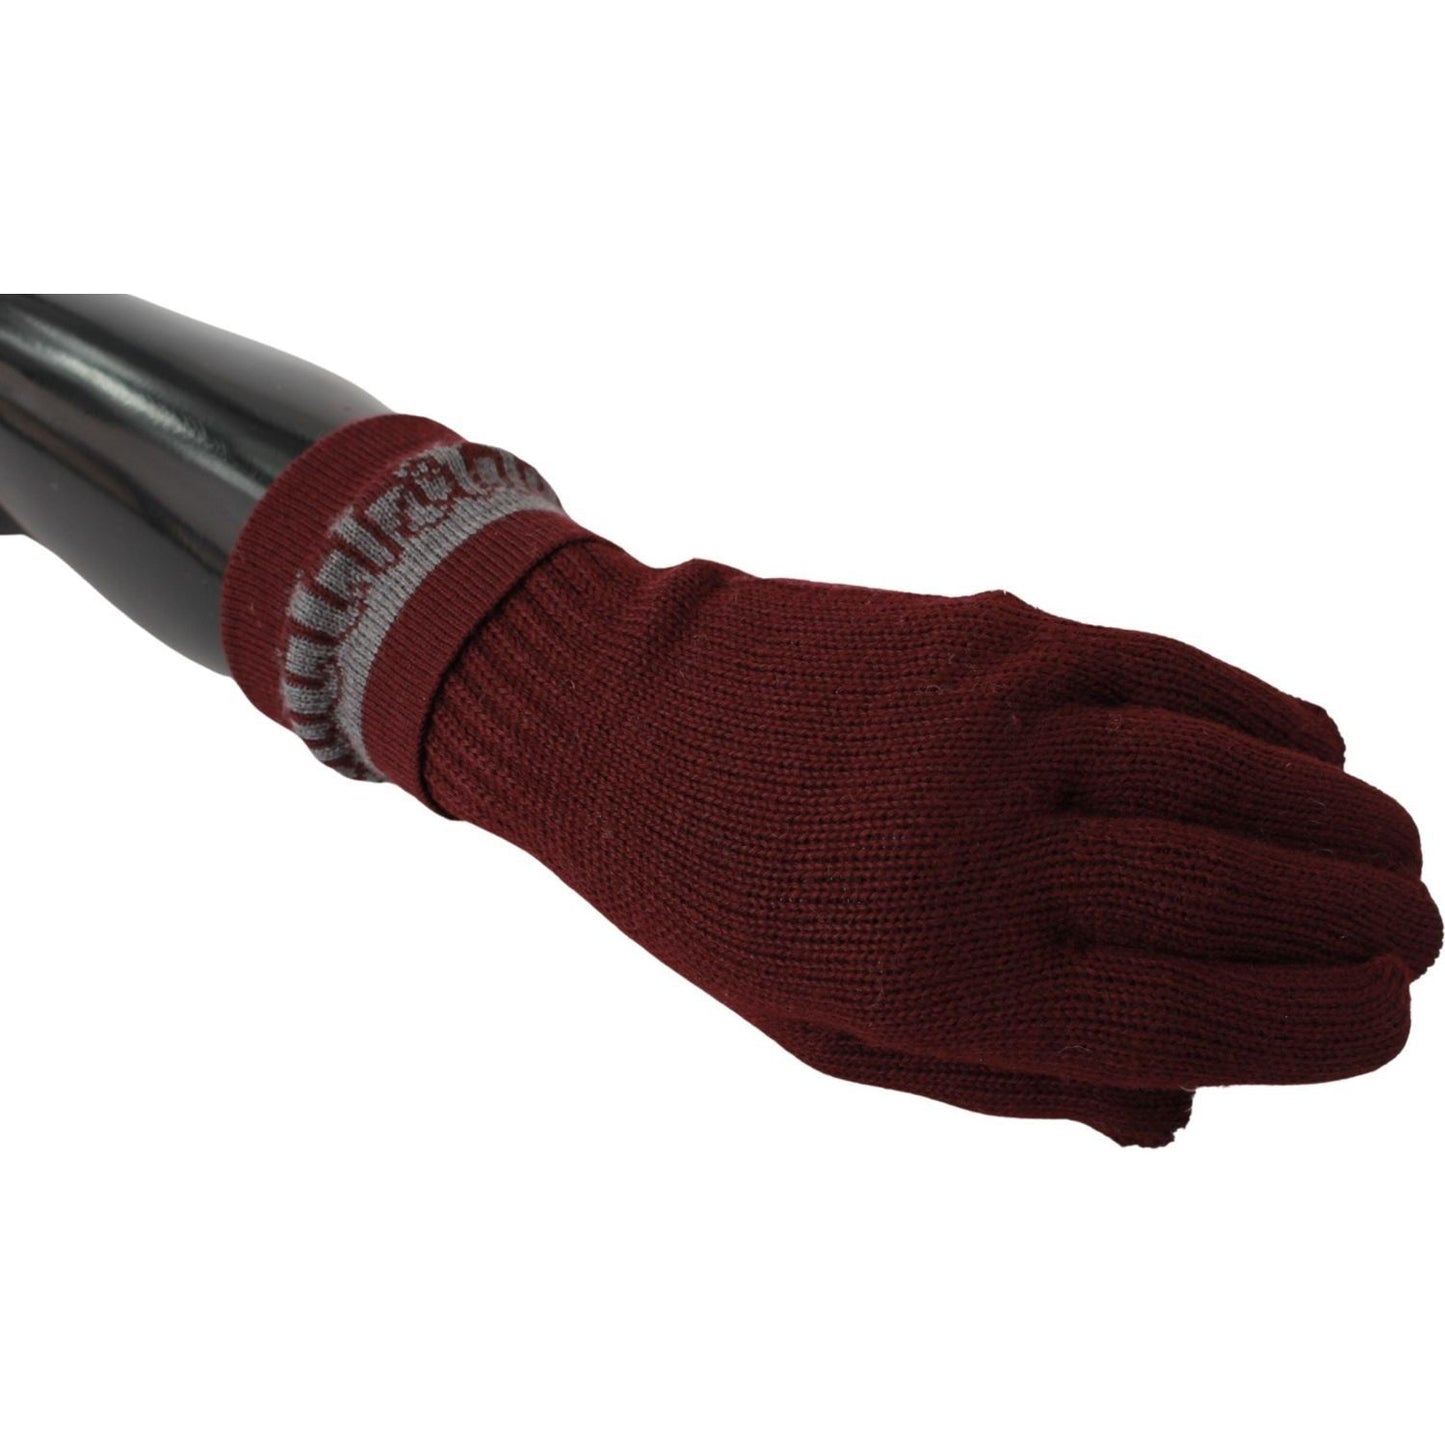 John Galliano Maroon Wool-Blend Designer Gloves maroon-elastic-wrist-length-mitten-designer-logo-gloves IMG_6695-scaled-b2cb1d8e-0f7.jpg